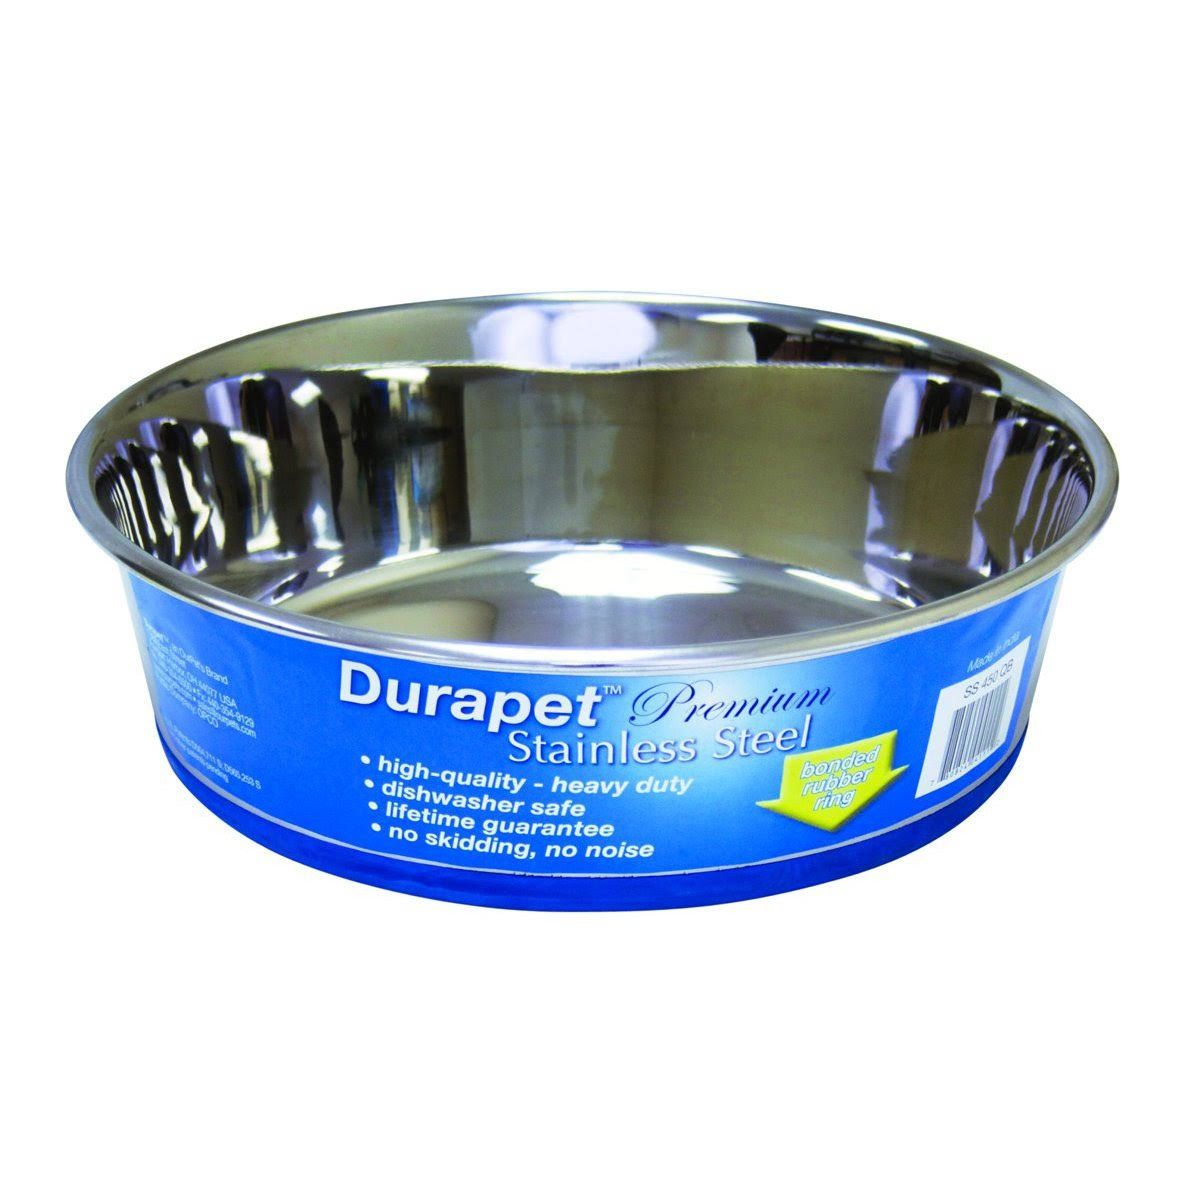 Our Pets Durapet Premium Pet Bowl - Stainless Steel, 144oz